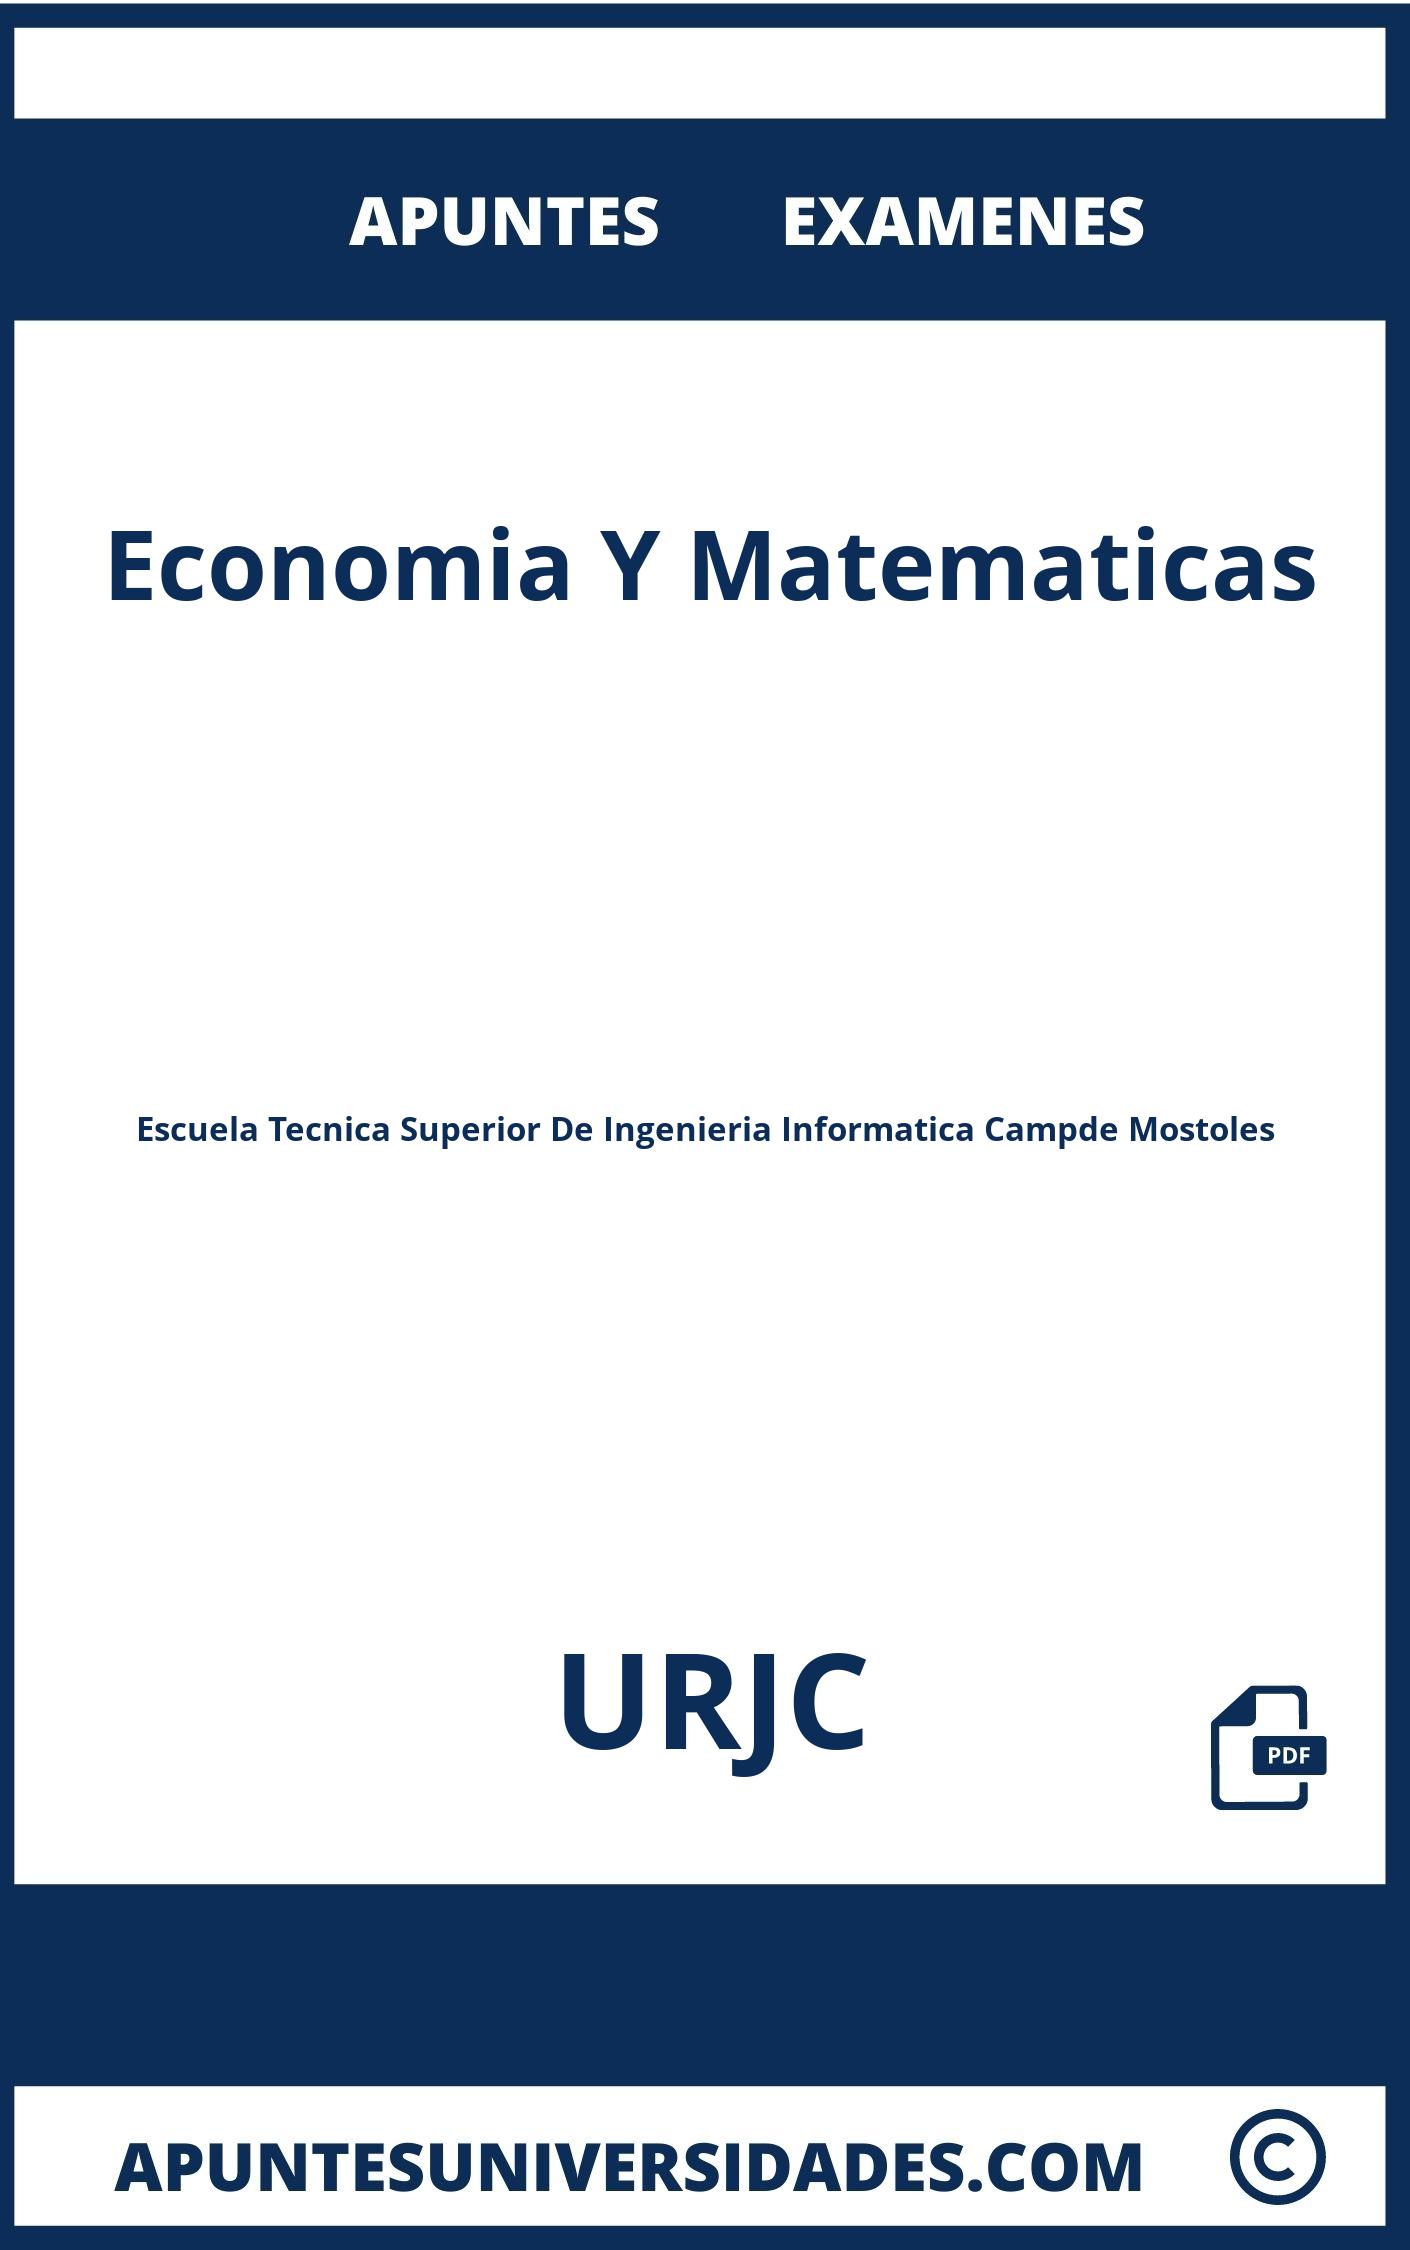 Apuntes y Examenes de Economia Y Matematicas URJC